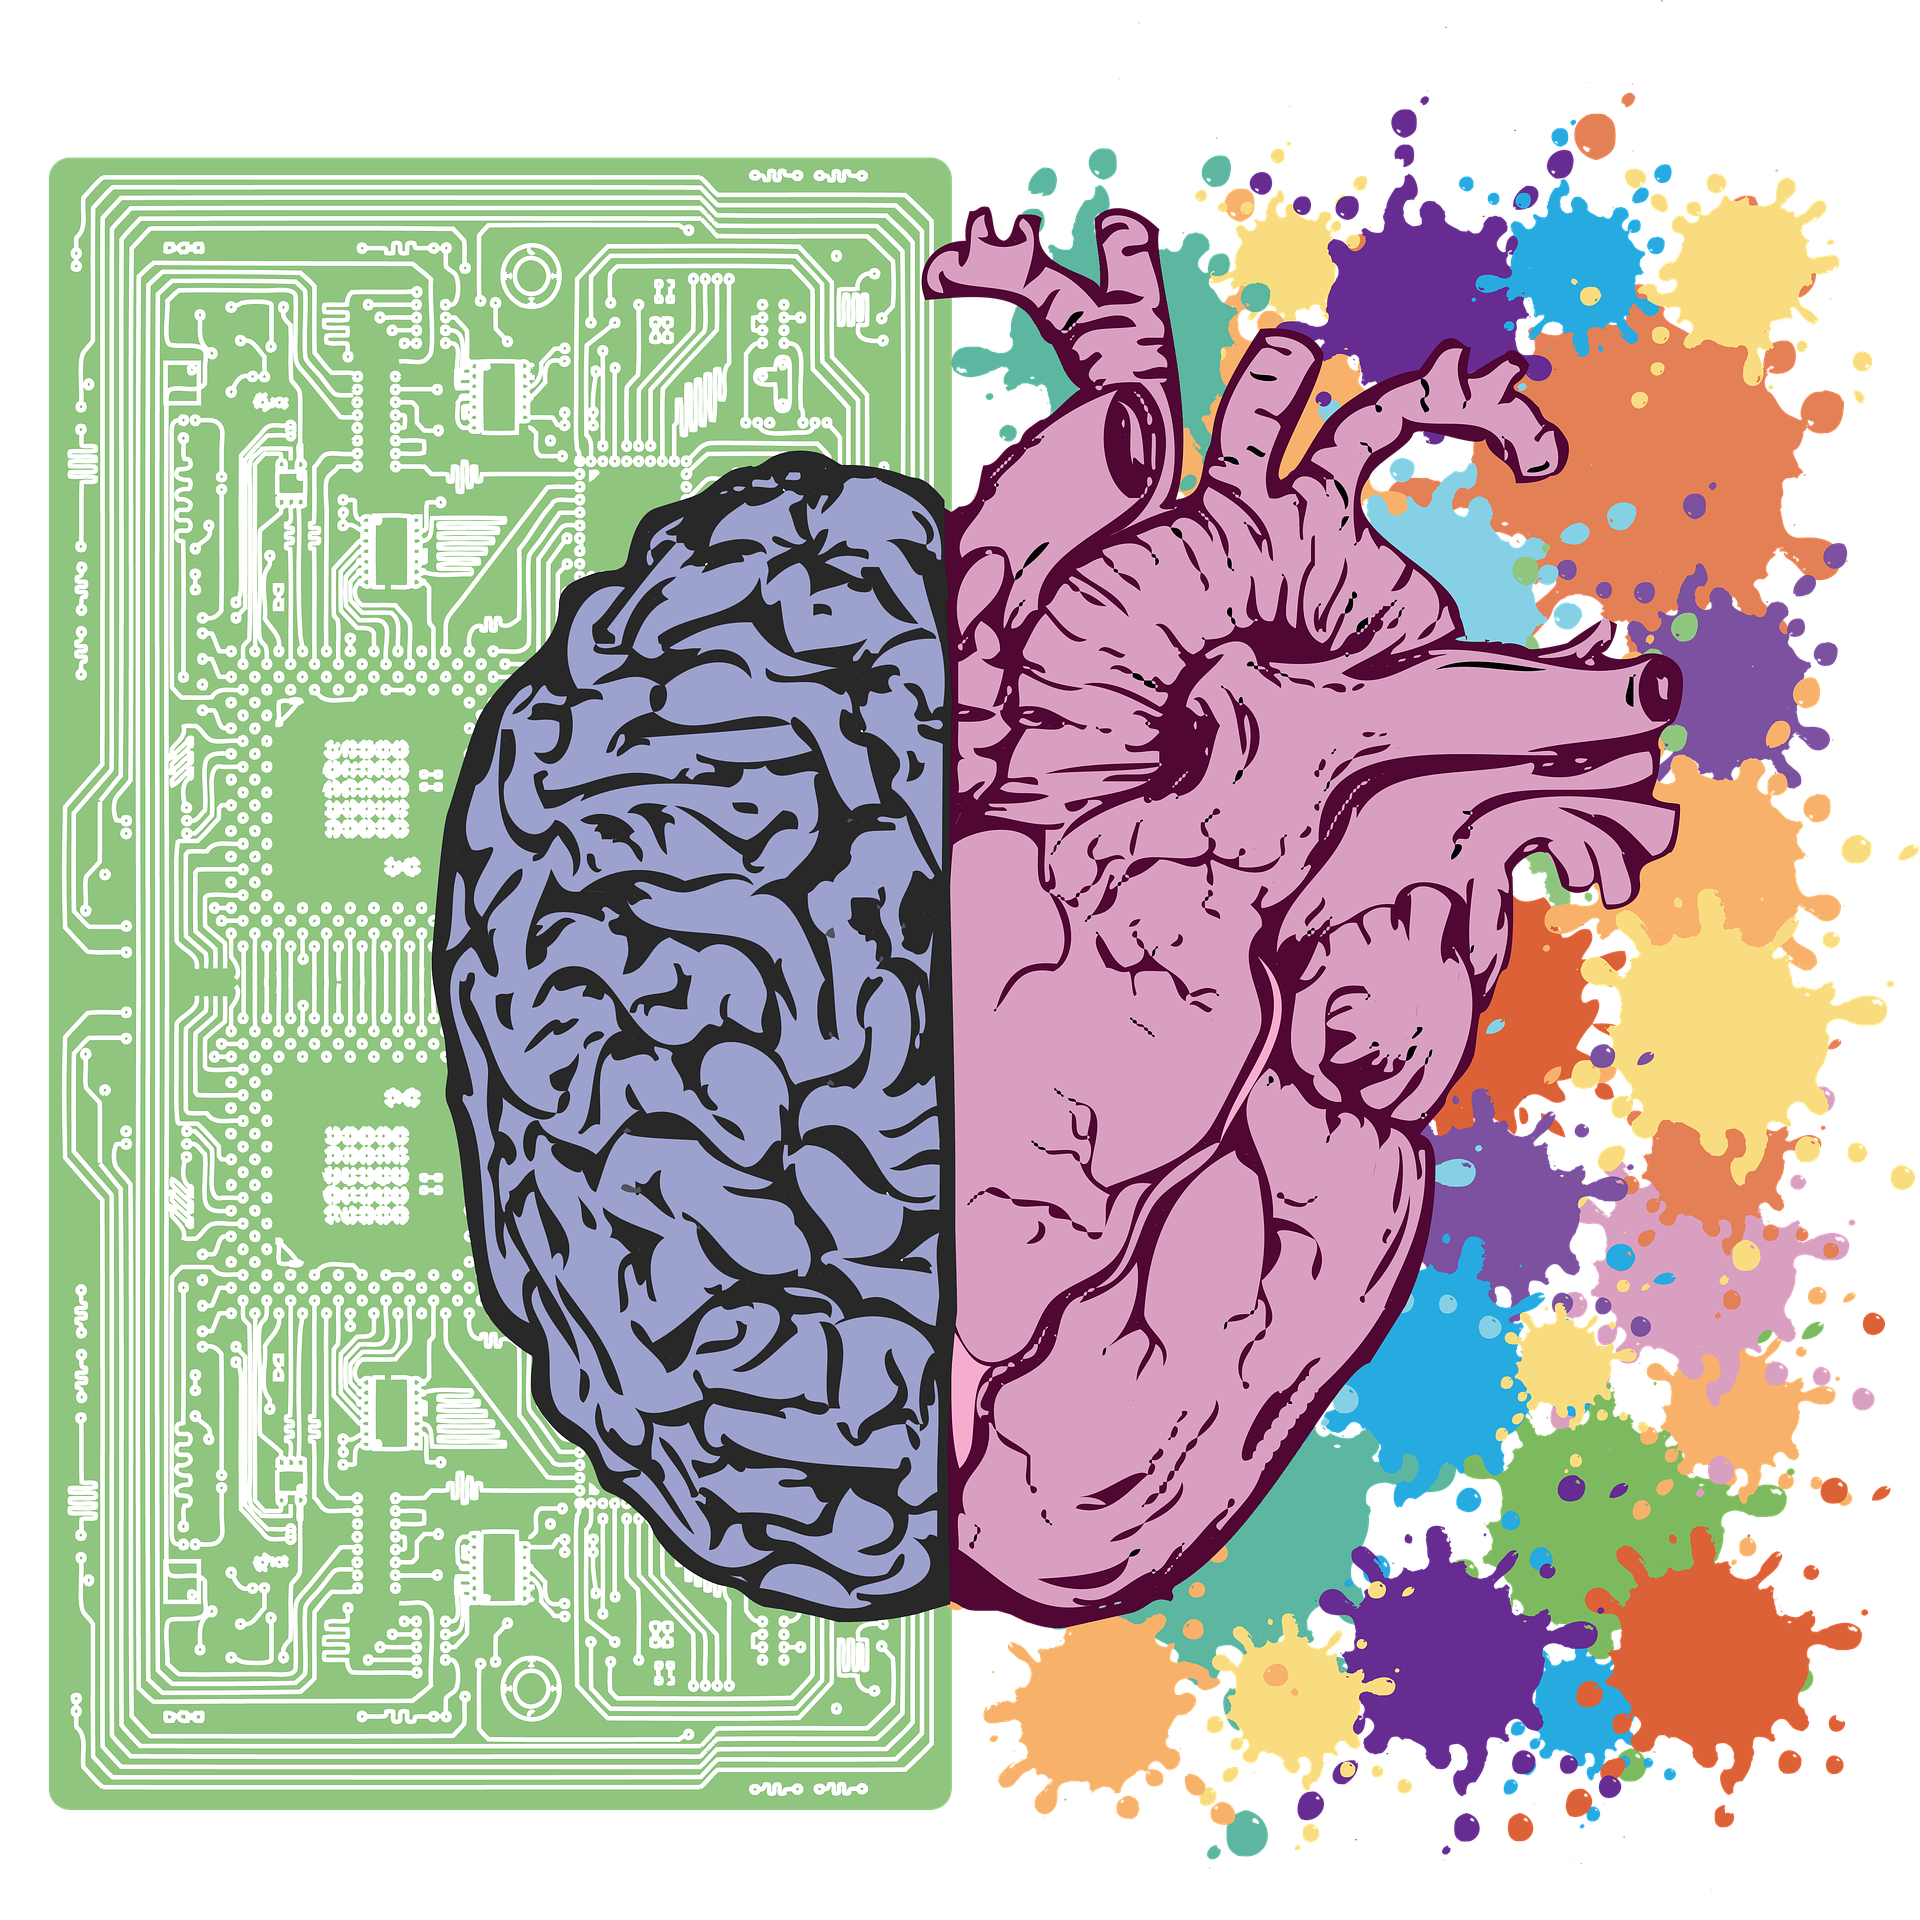 Os hemisférios direito e esquerdo do cérebro com cada lado de uma cor diferente. O lado esquerdo é desenhado contra o fundo de um chip de computador e o direito contra um fundo de respingos de diferentes cores brilhantes.